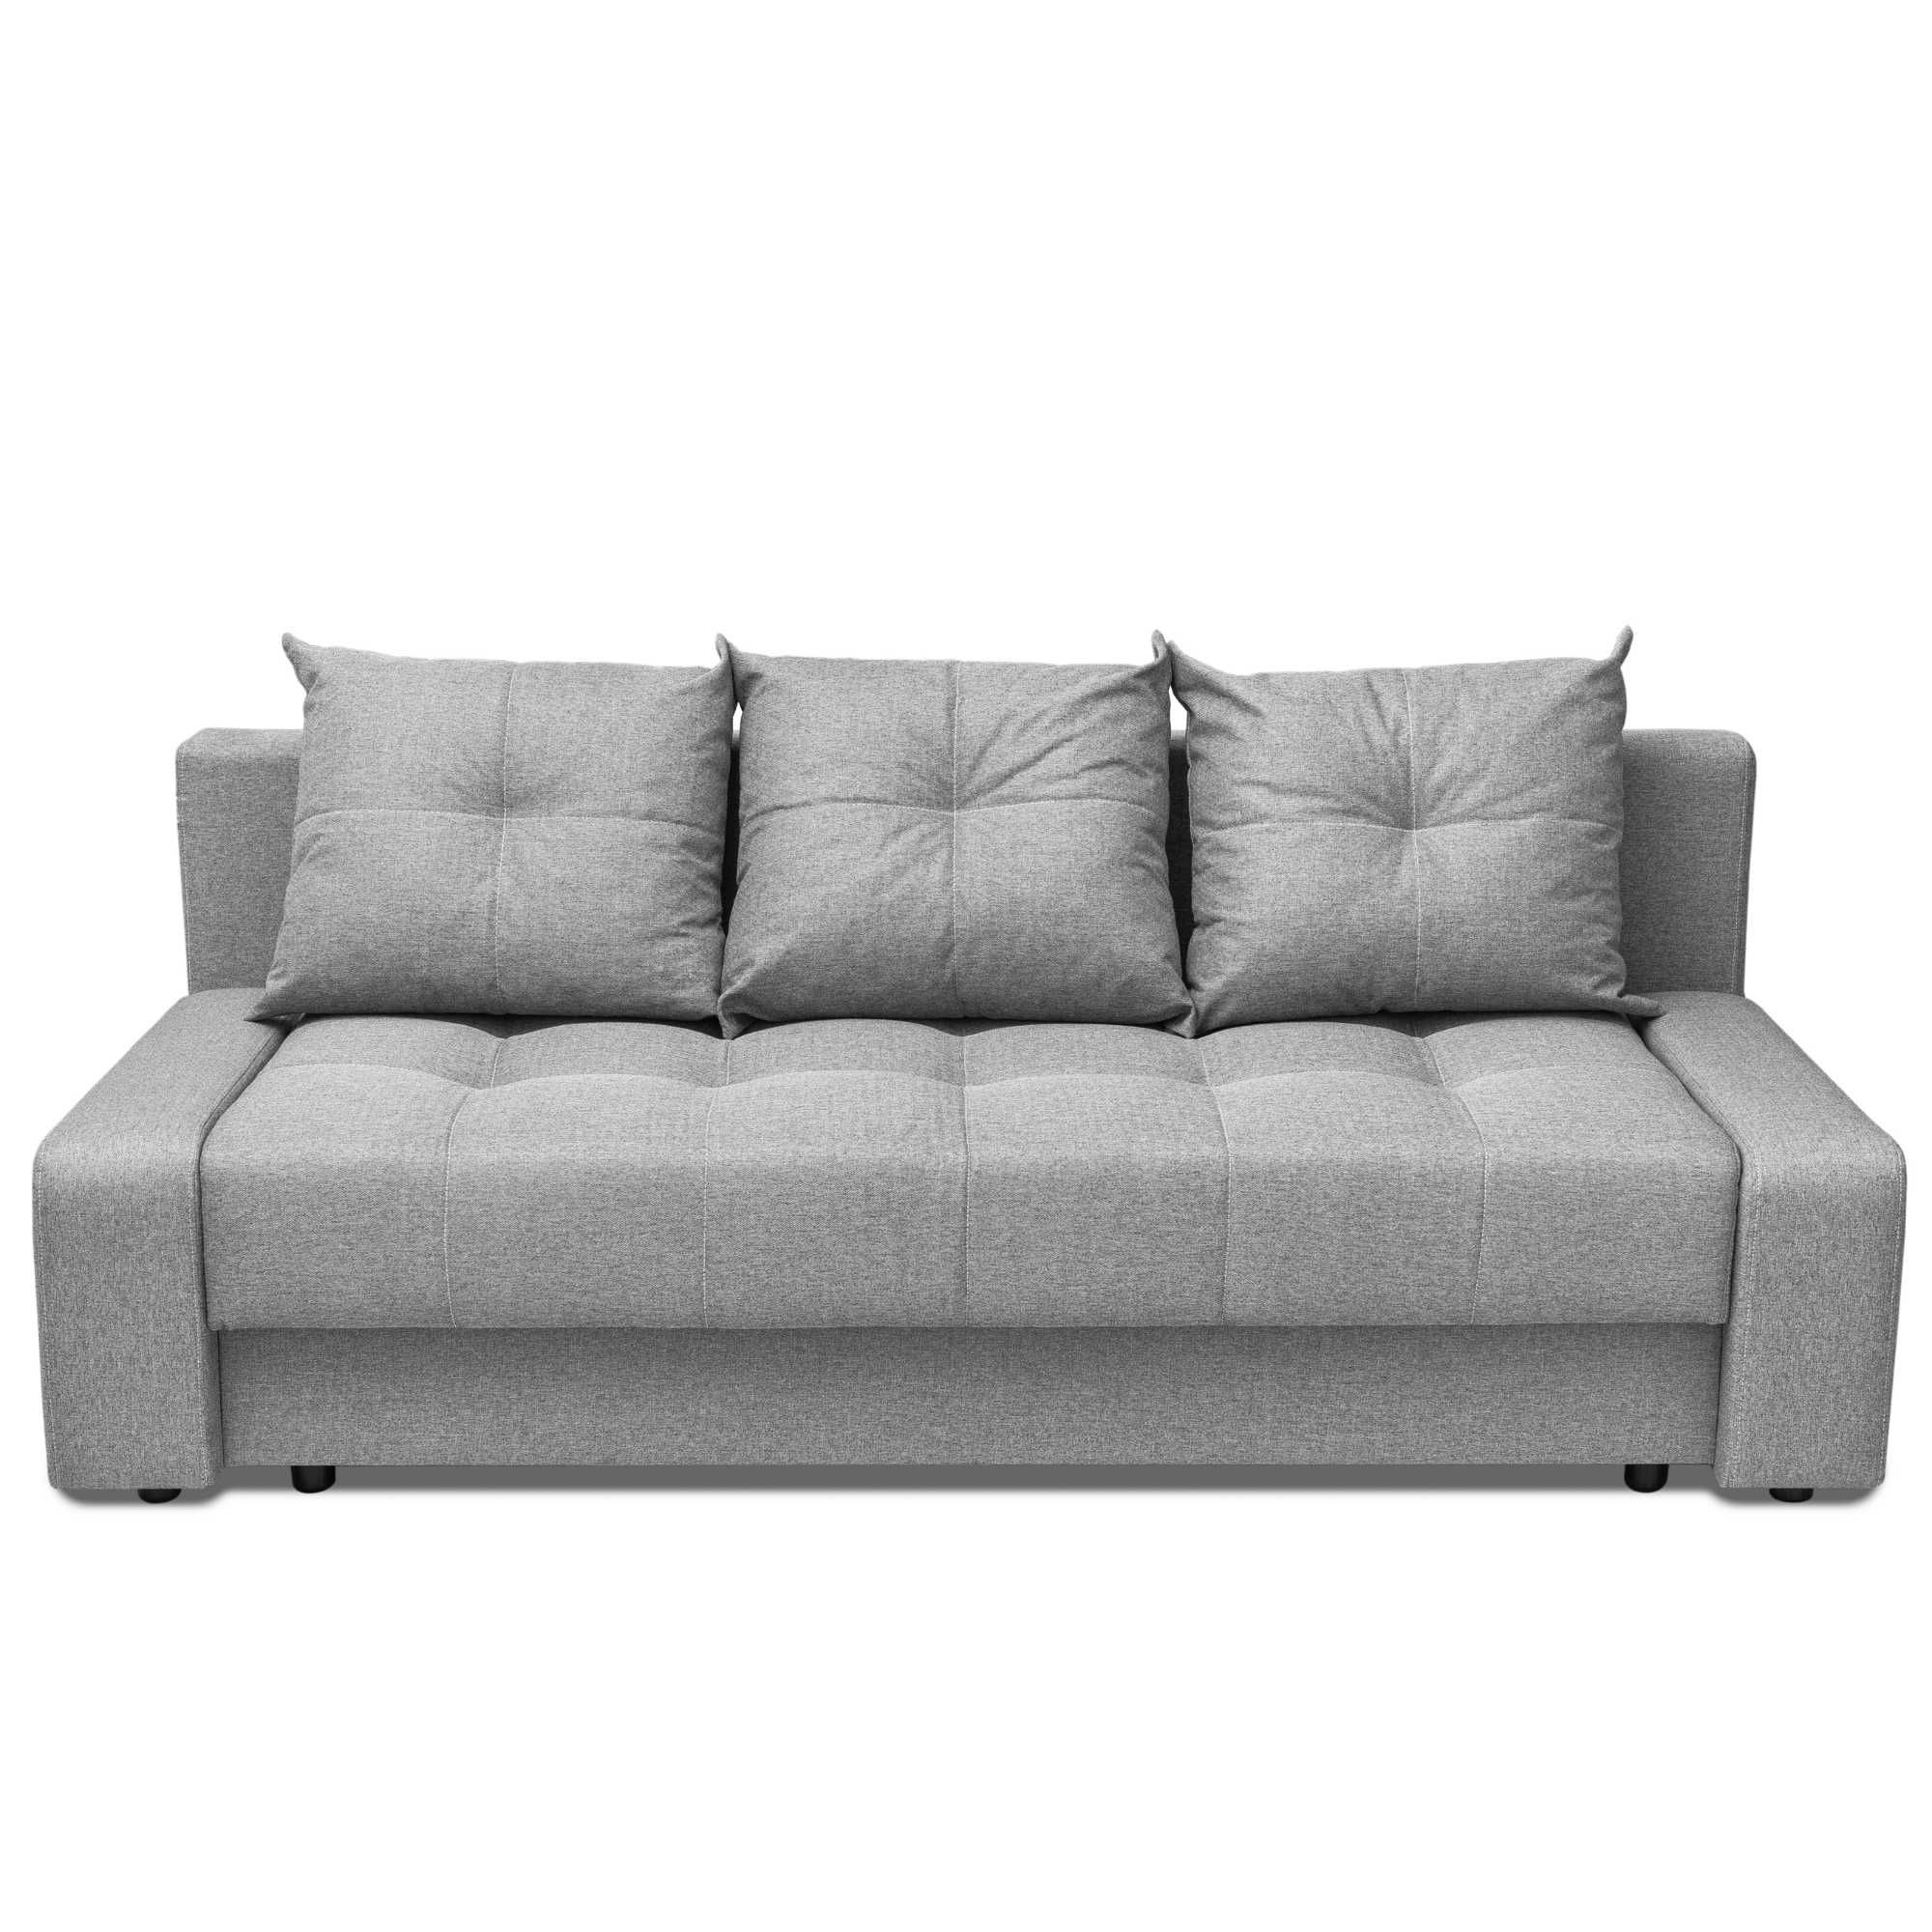 Диван Манхэттен серый мягкая мебель для гостинной Доставка